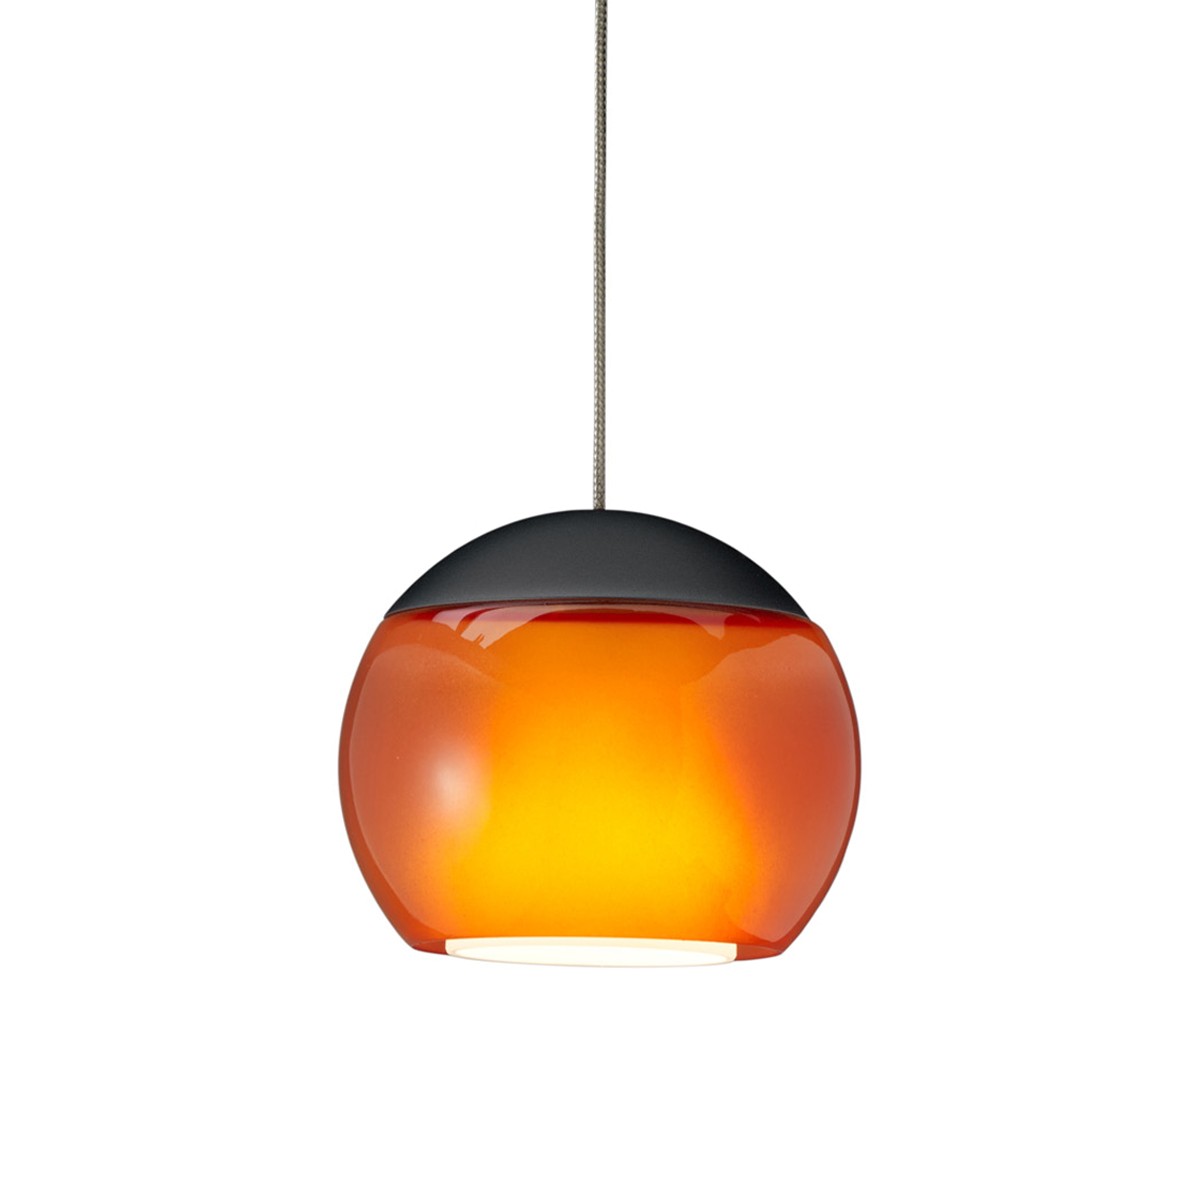 Oligo Balino LED Pendelleuchte, 1. Generation, schwarz matt / orange glänzend